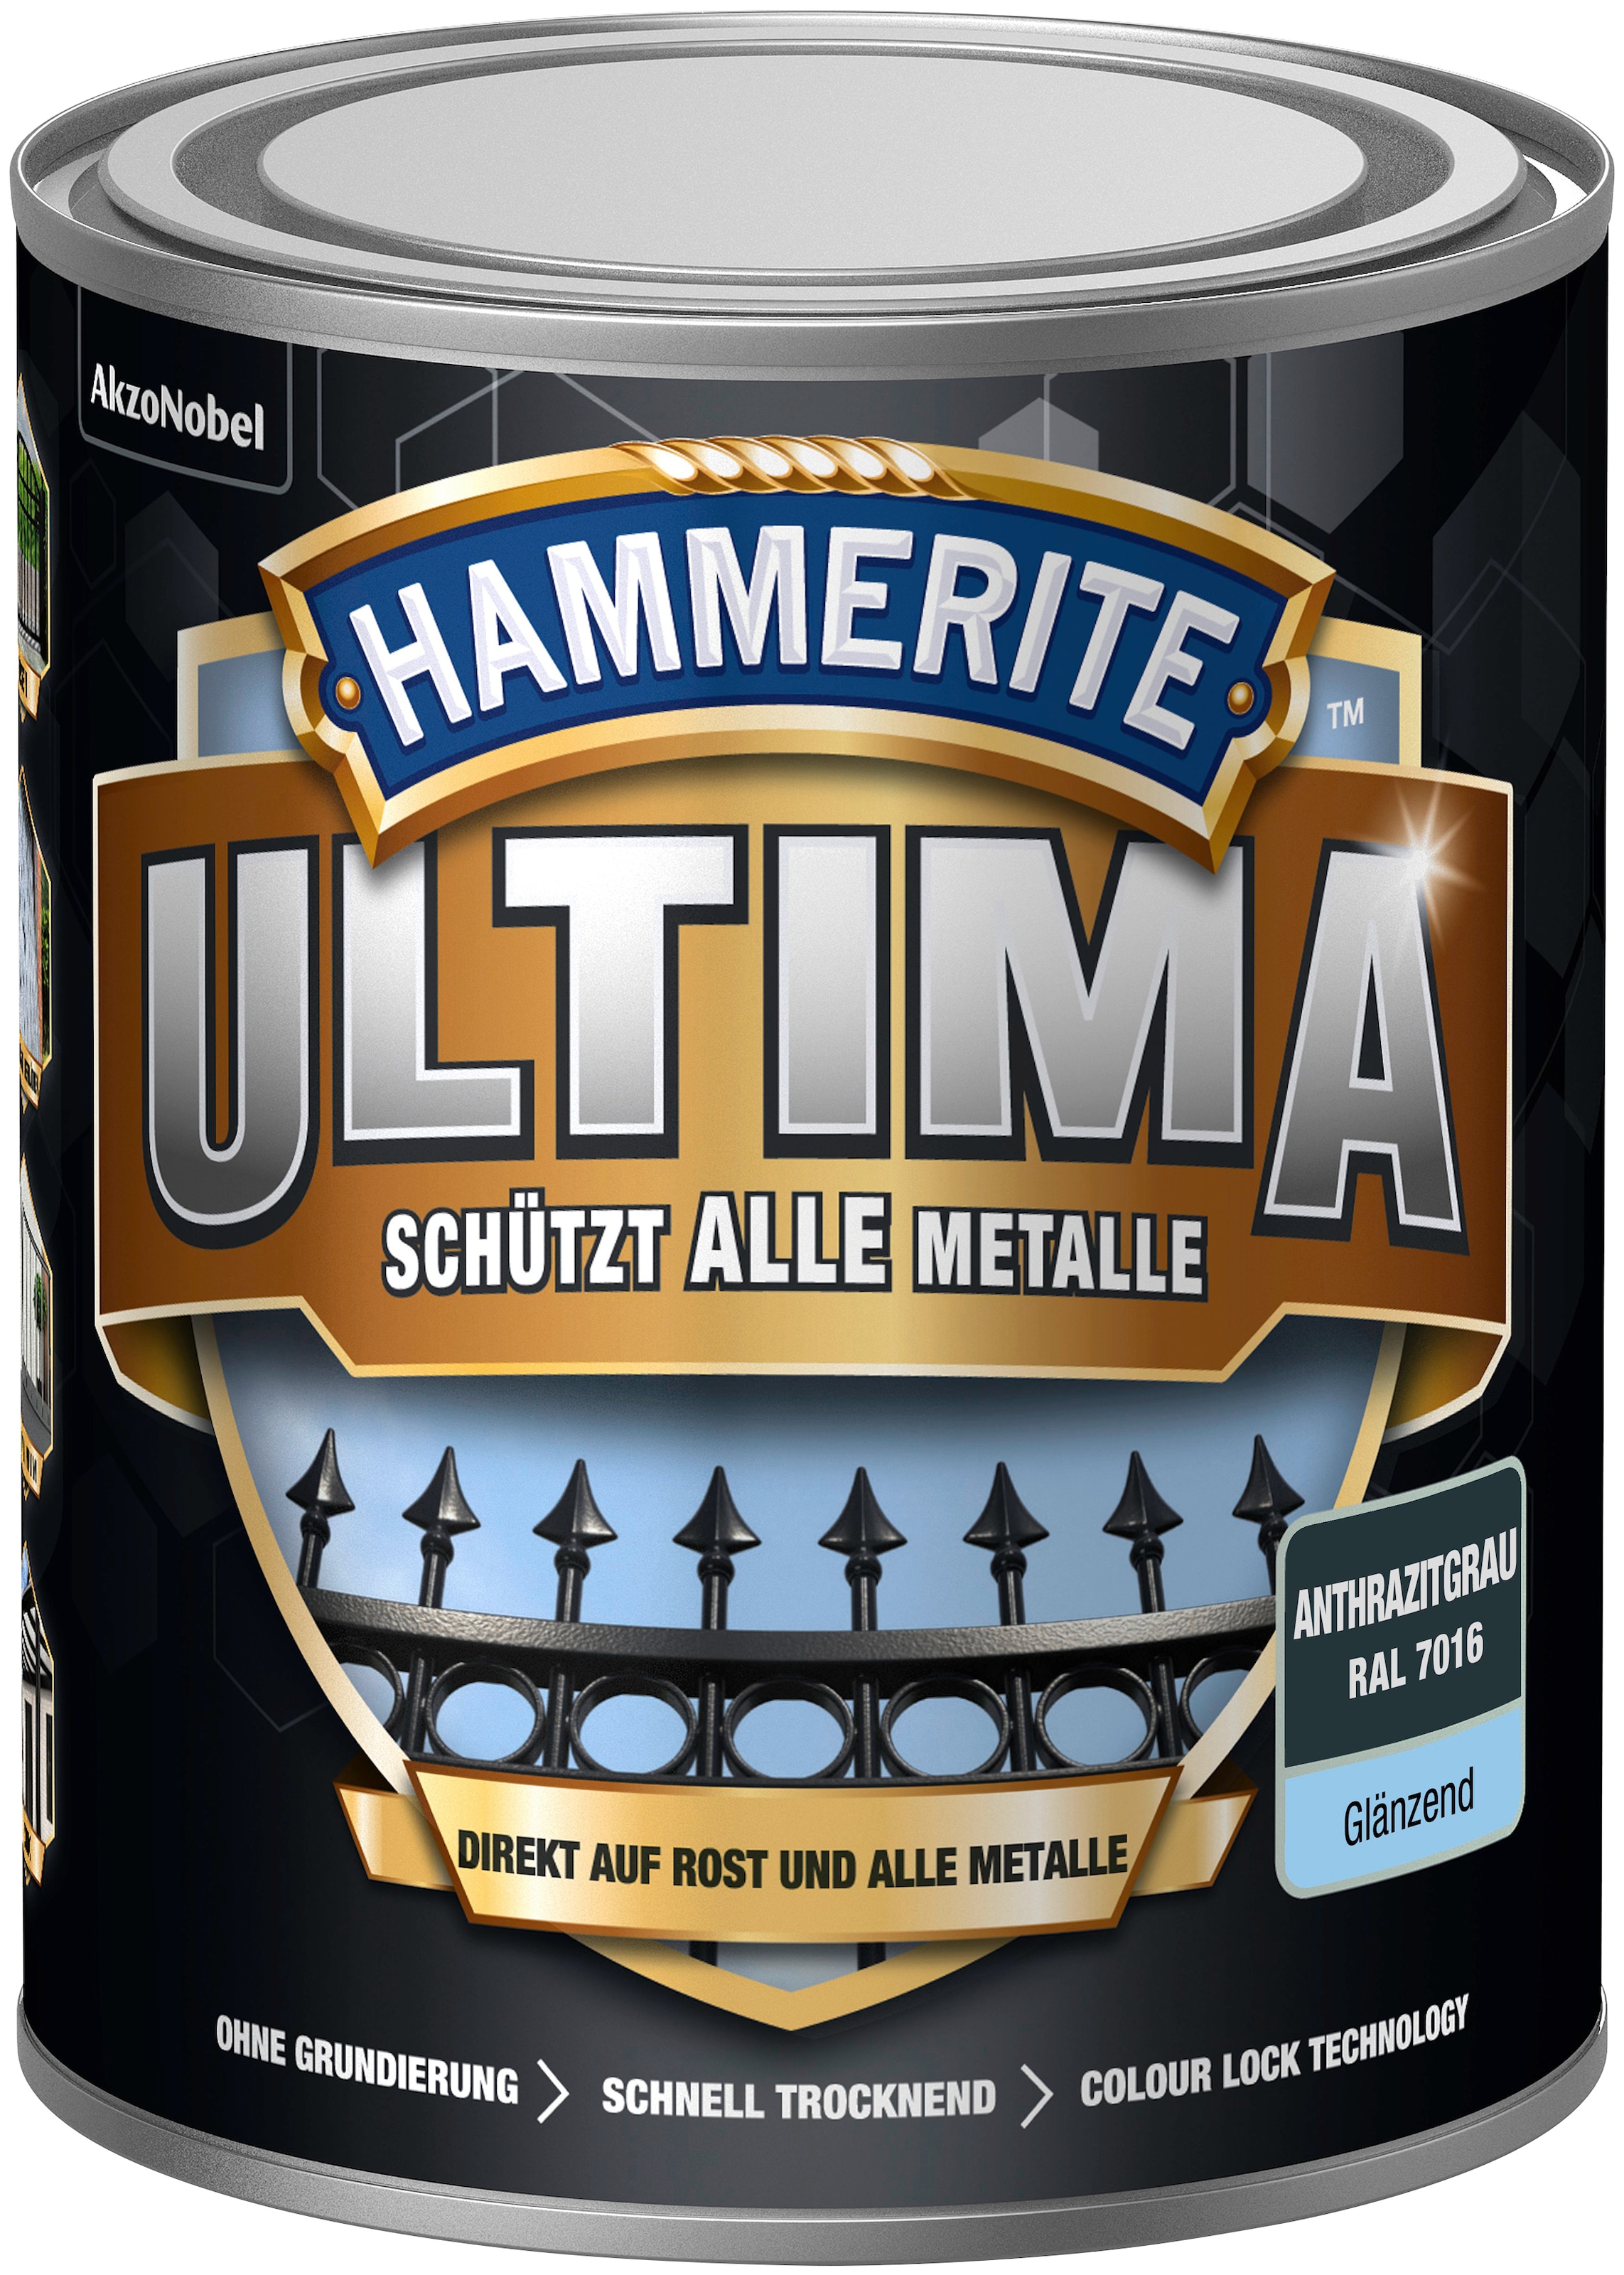 Hammerite Metallschutzlack »ULTIMA«, 3in1, anthrazitgrau kaufen bei RAL 7016, glänzend OTTO